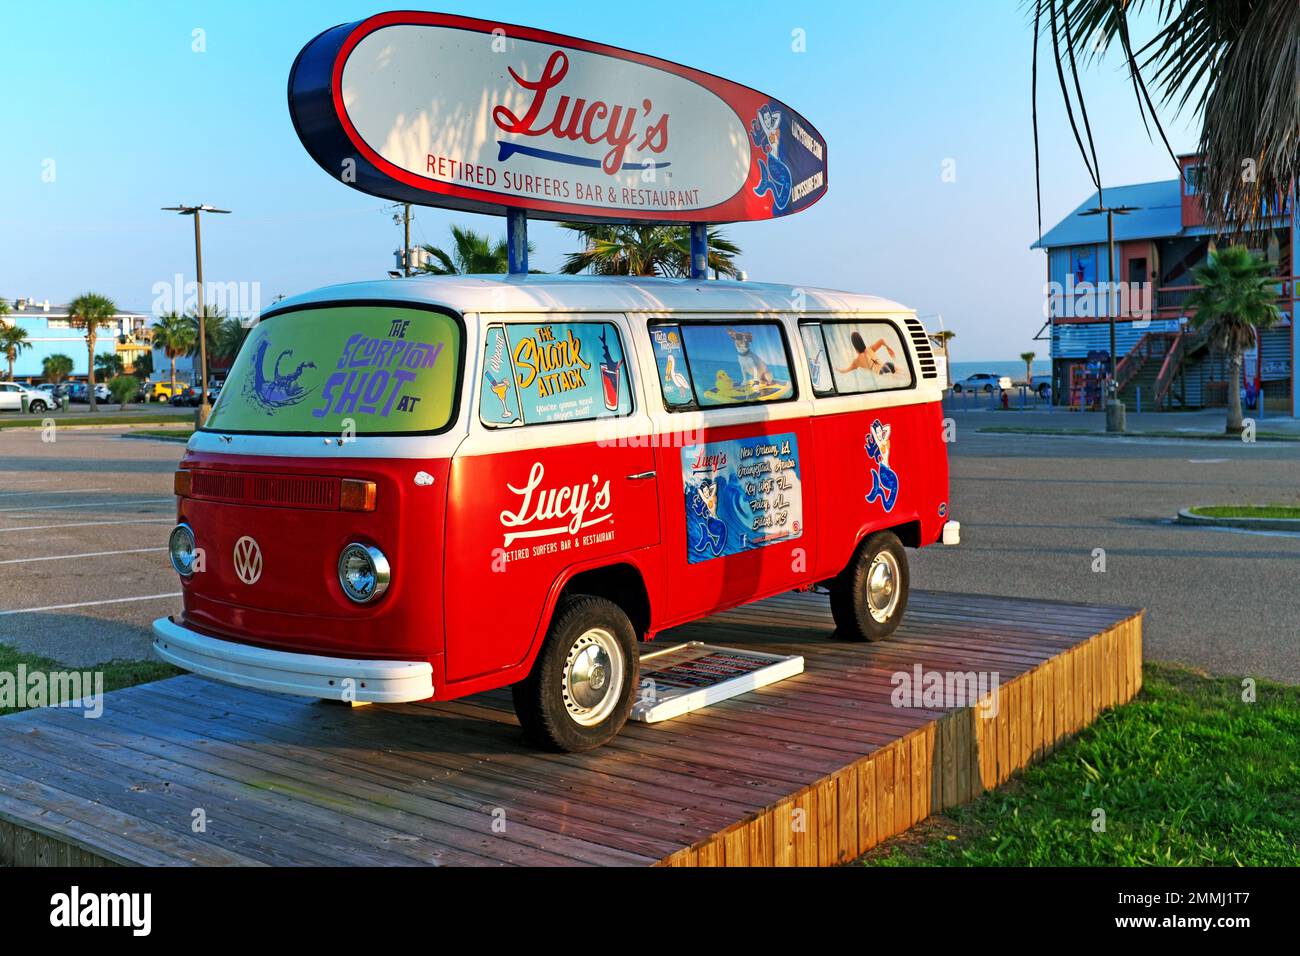 Lucy's ausgeschildertes Surfer's Bar and Restaurant Schild auf einem alten VW-Van, der am Beach Blvd vor dem Restaurant in Biloxi, Mississippi, geparkt ist. Stockfoto